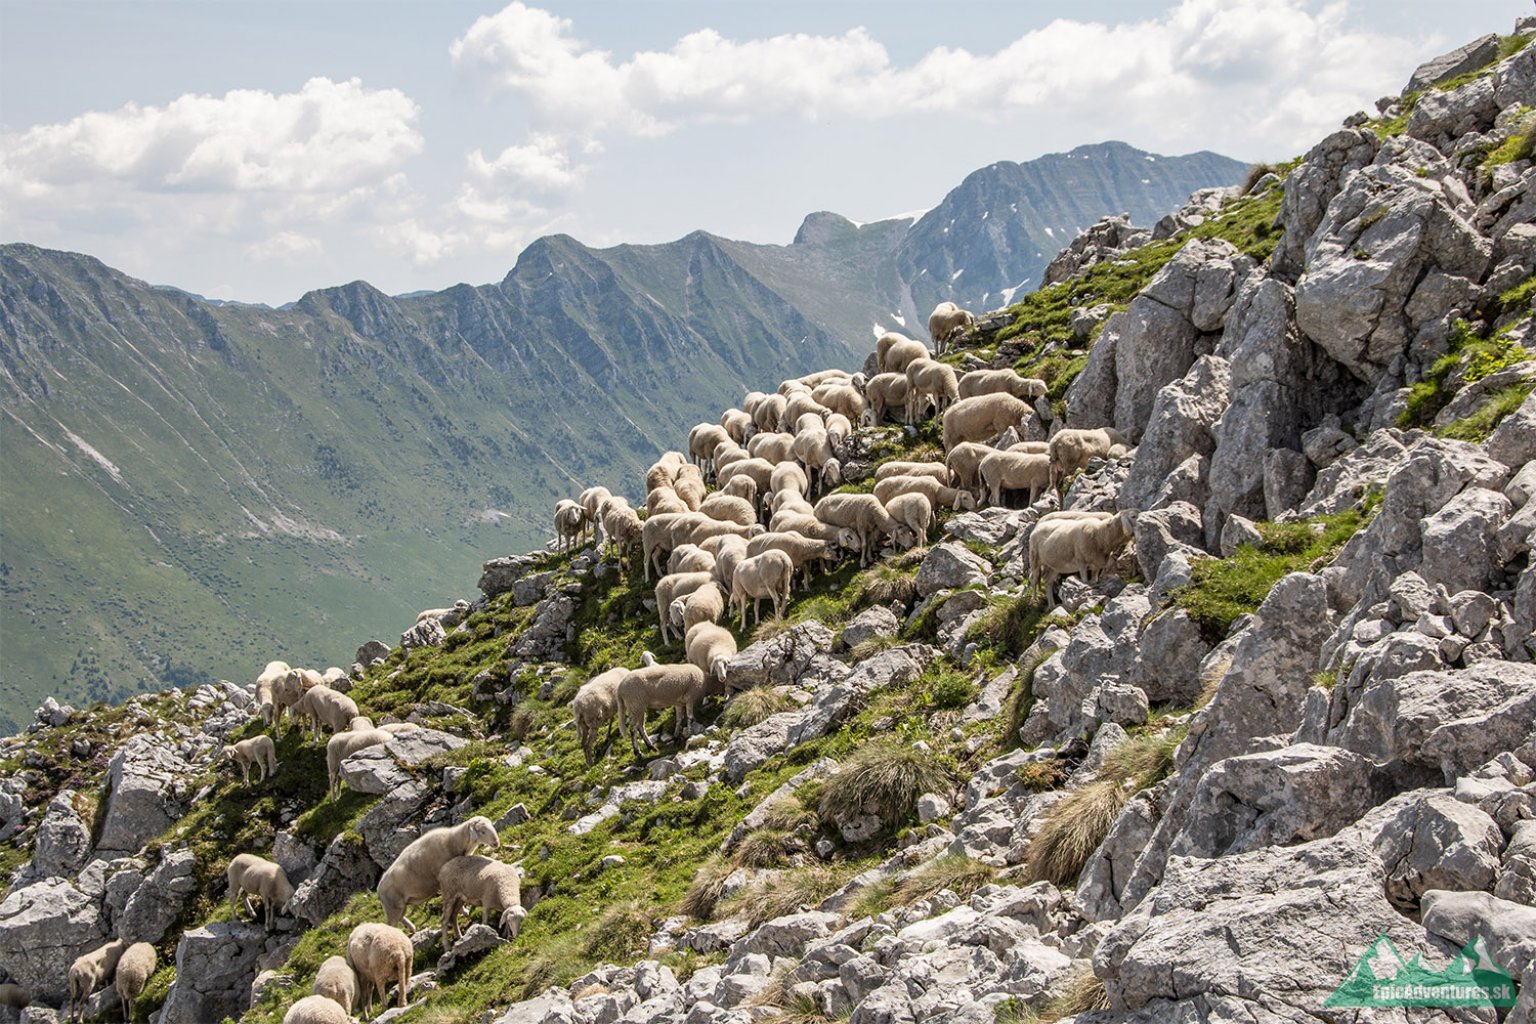 Ovce sa dostanú naozaj všade; Foto:epicadventures.sk